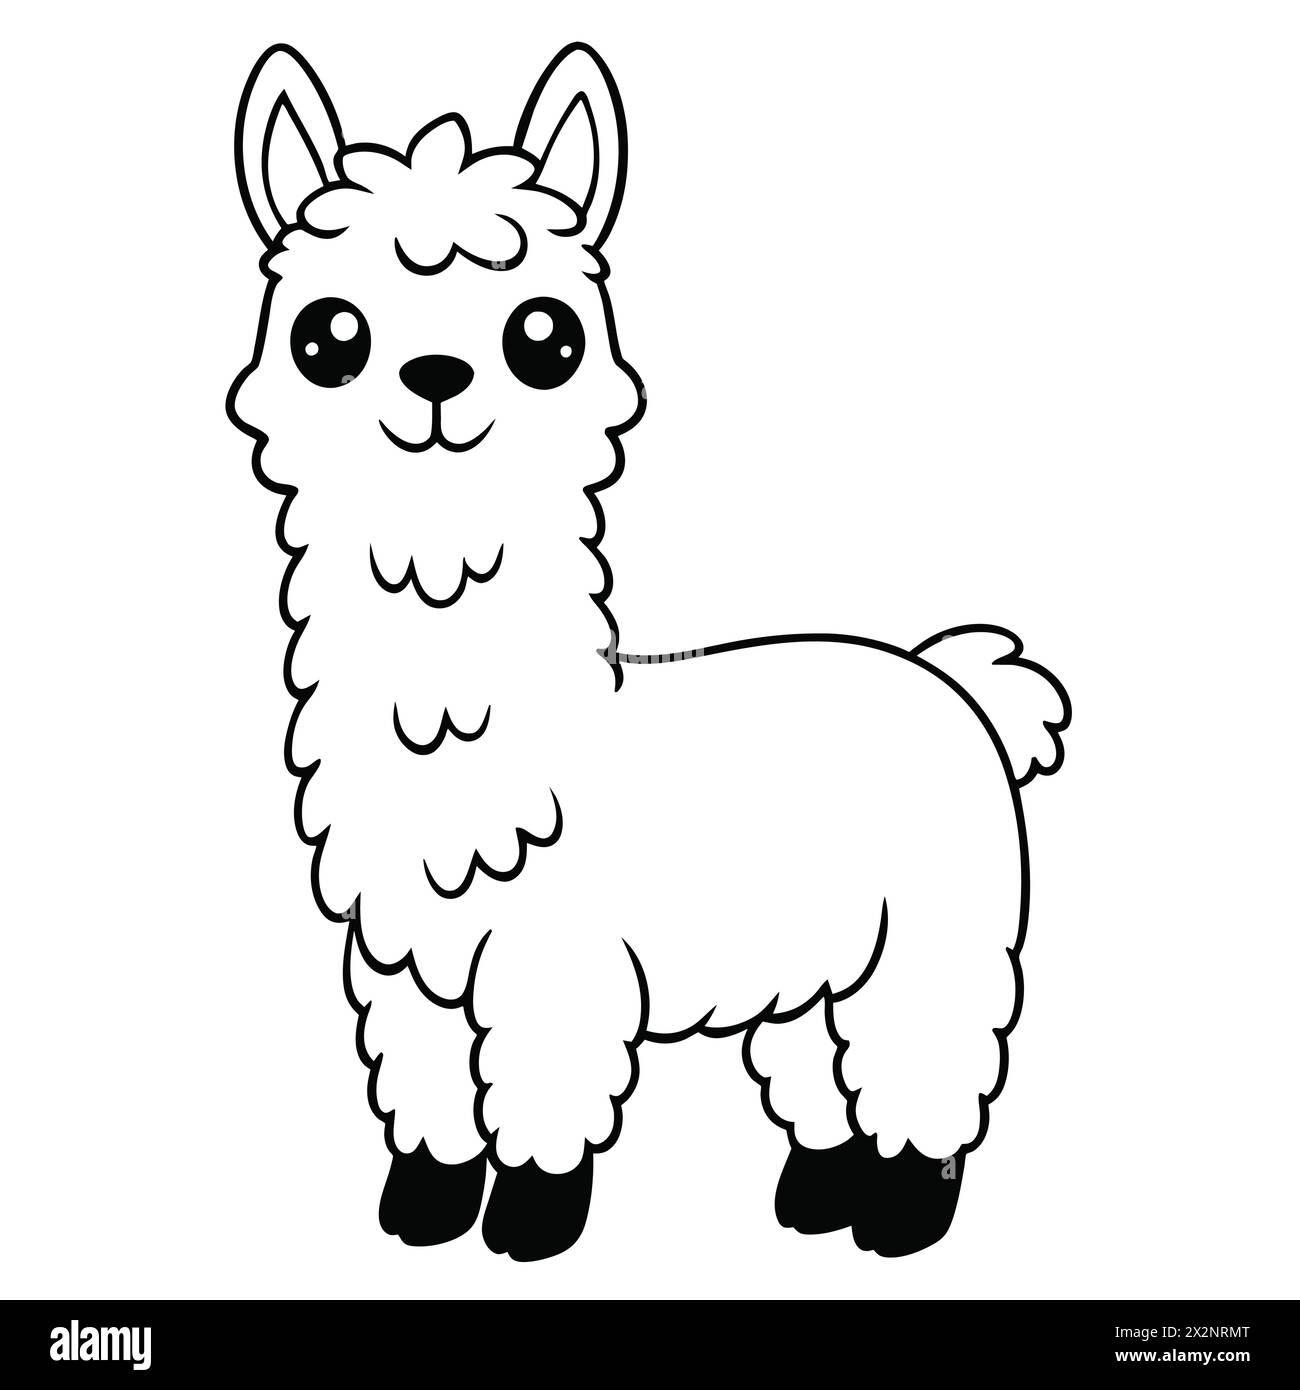 Andenabenteuer: Entzückende Llamas, perfekt für Kinder Bücher Karten Einladungen Logos Webdesign T-Shirts Grußkarten Briefpapier Verpackung Tattoo Stock Vektor